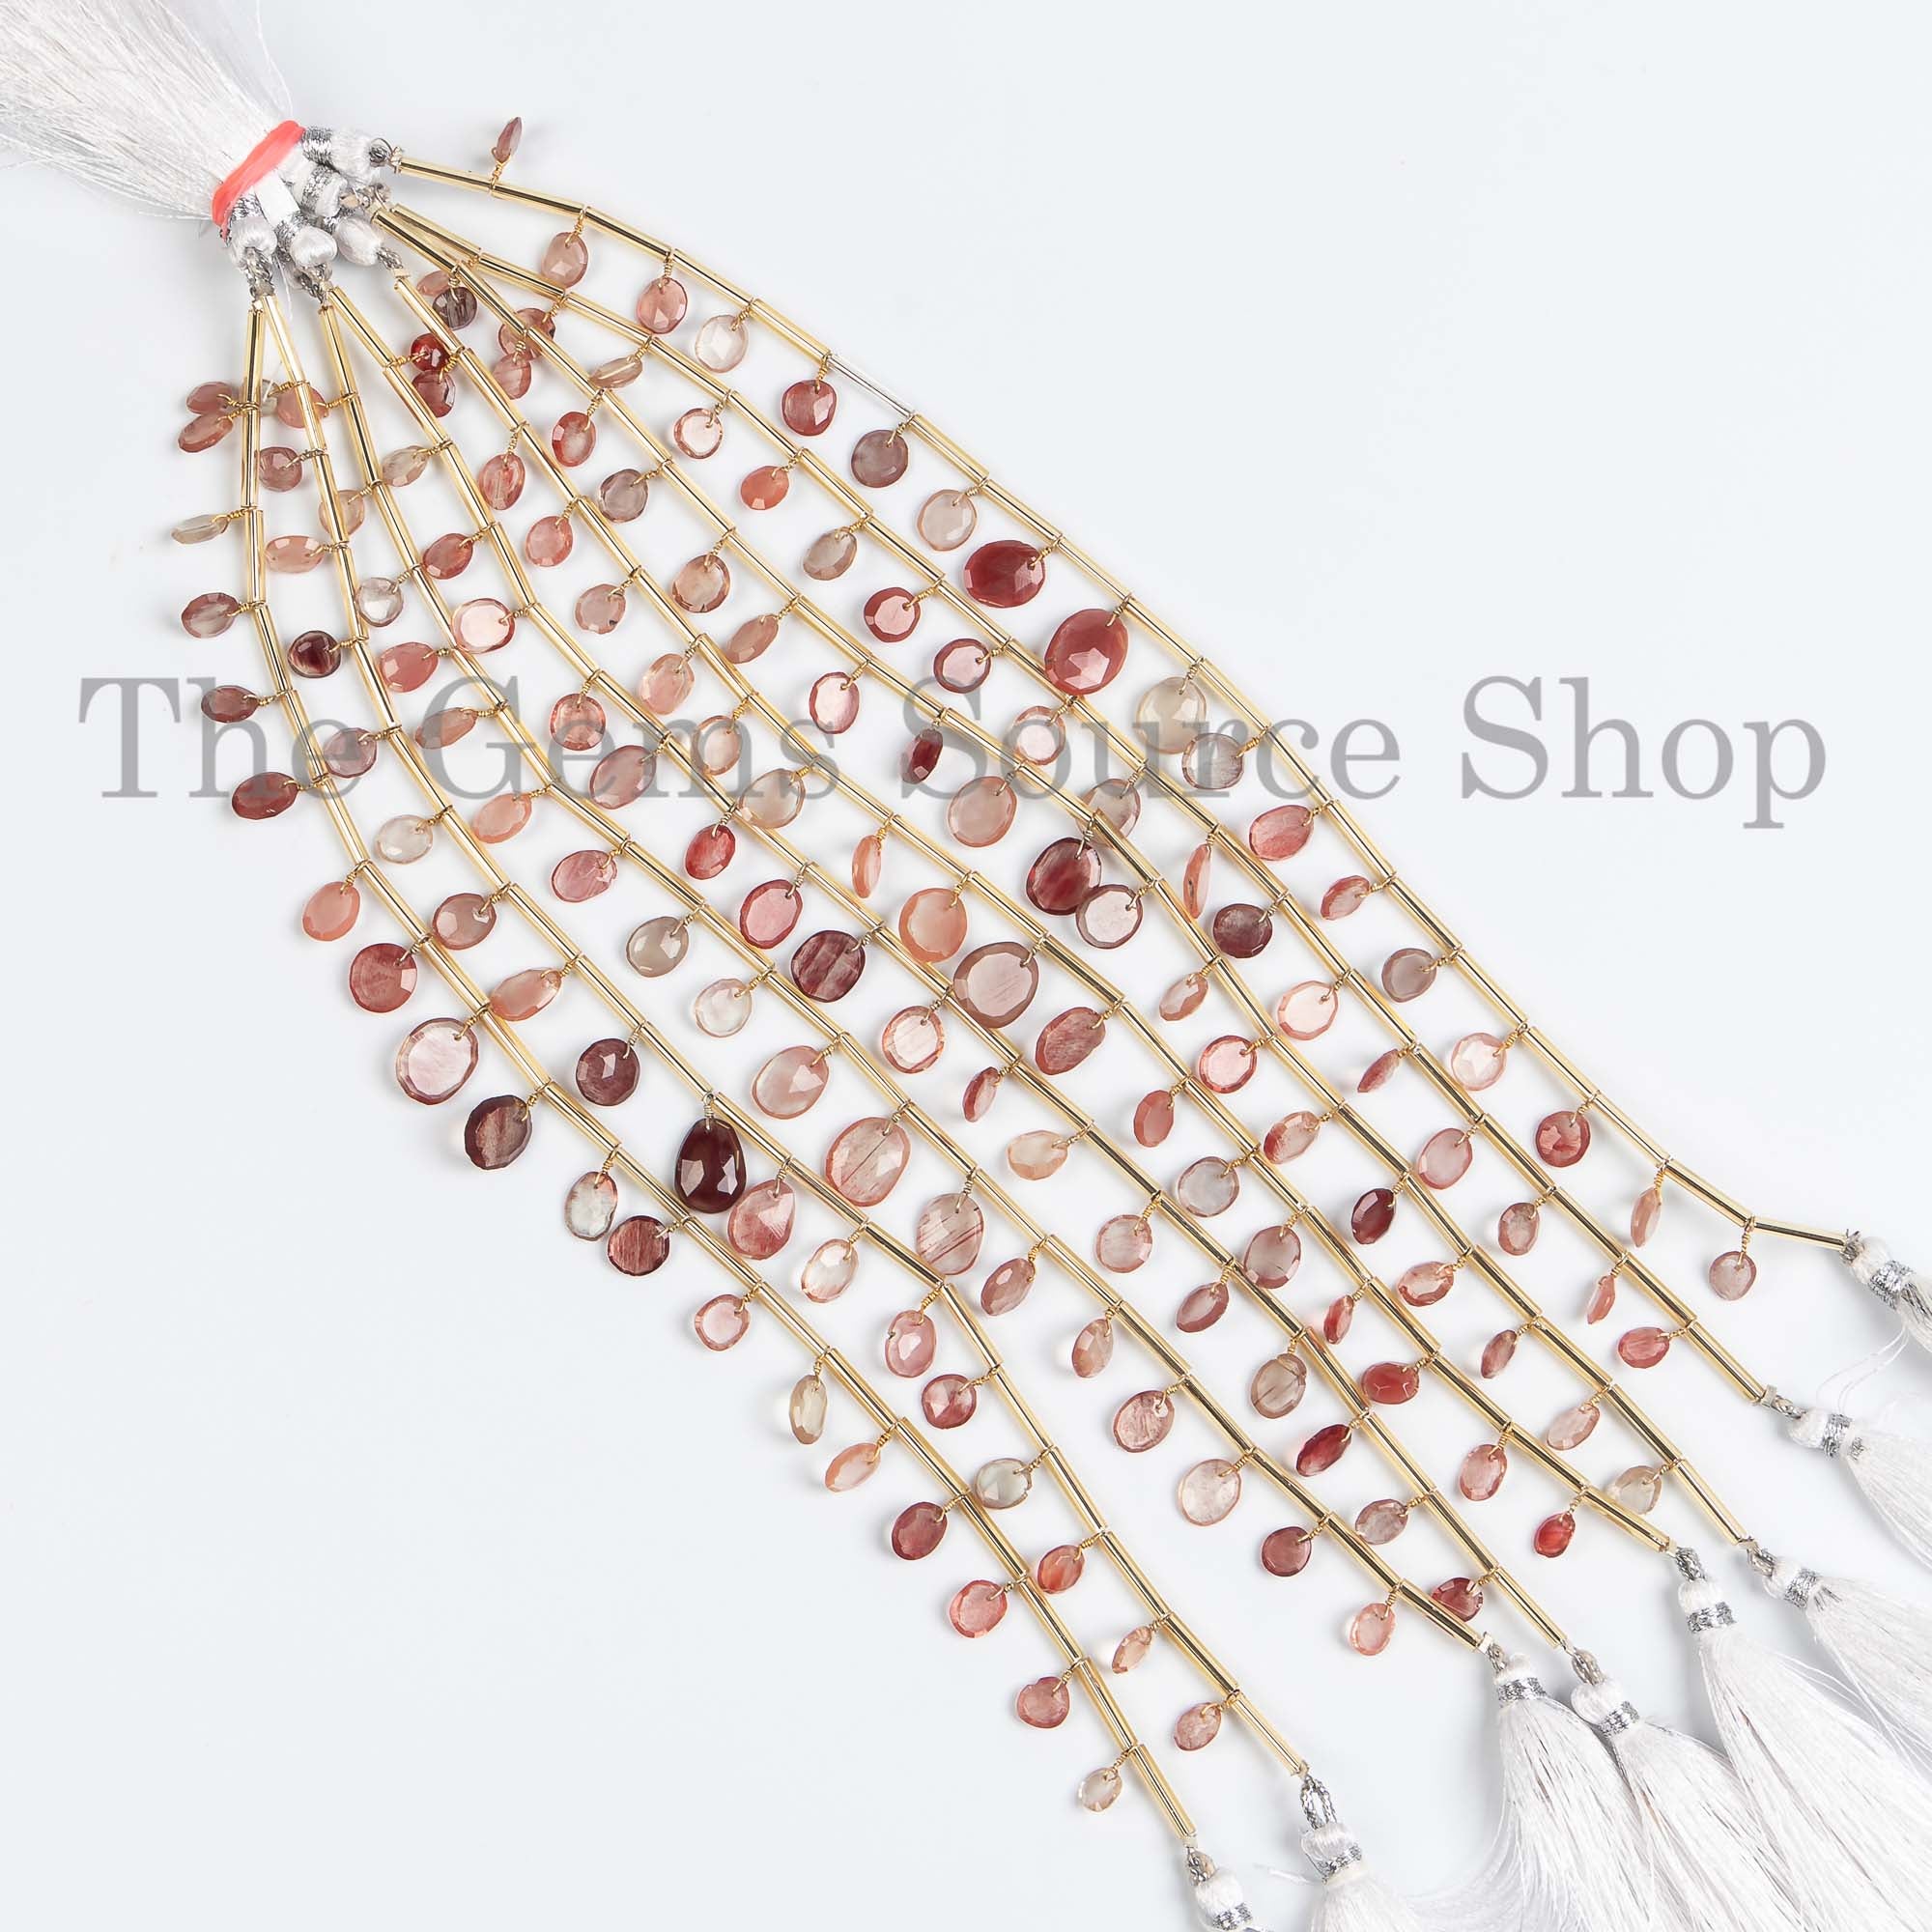 Andesine Labradorite Briolette, Labradorite Rose Cut Beads, Labradorite Front To Back Beads, Labradorite Beads, Labradorite Face Drill Beads